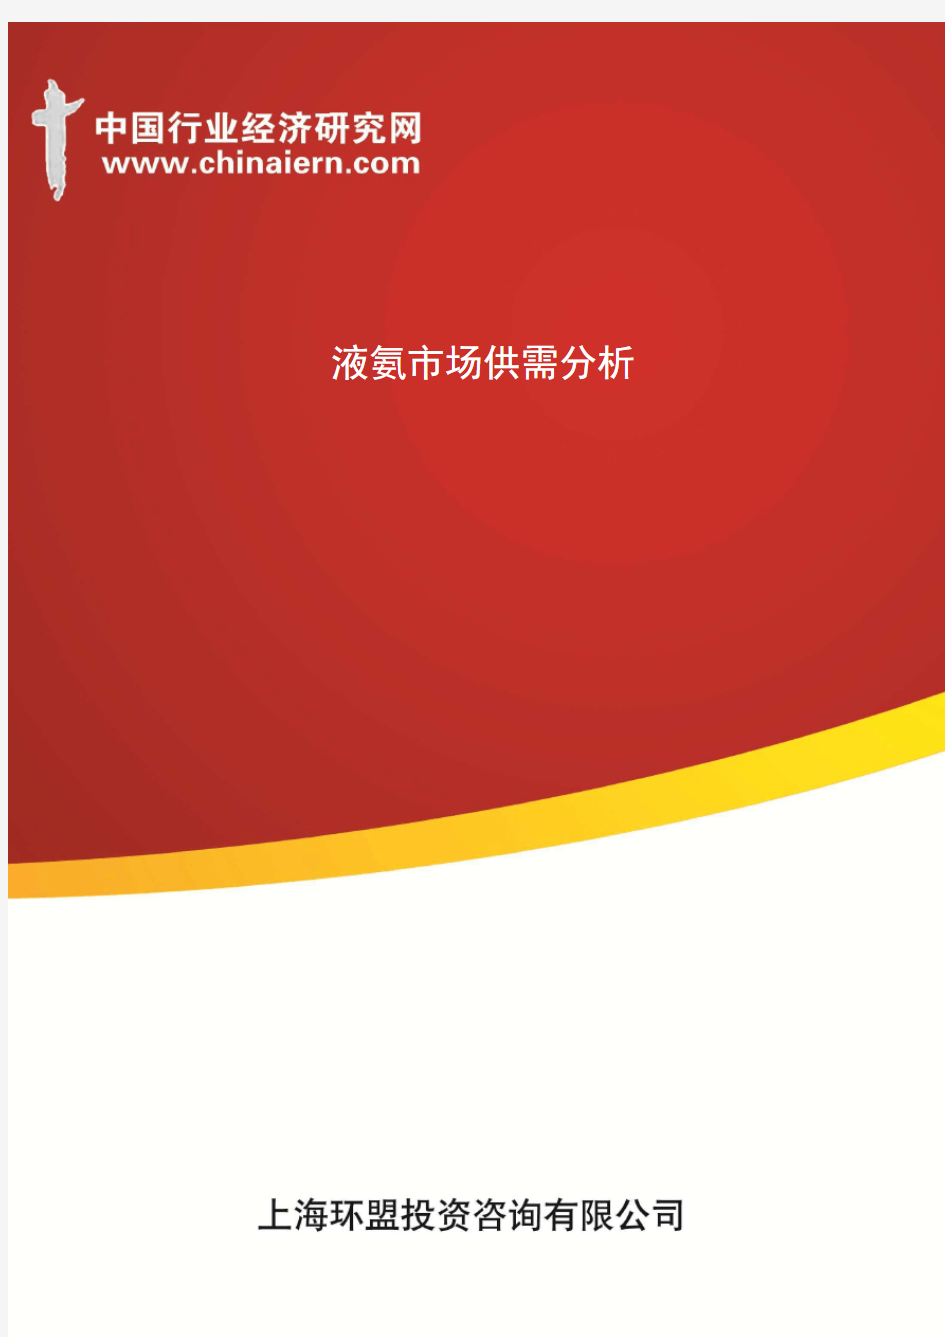 液氨市场供需分析(上海环盟)